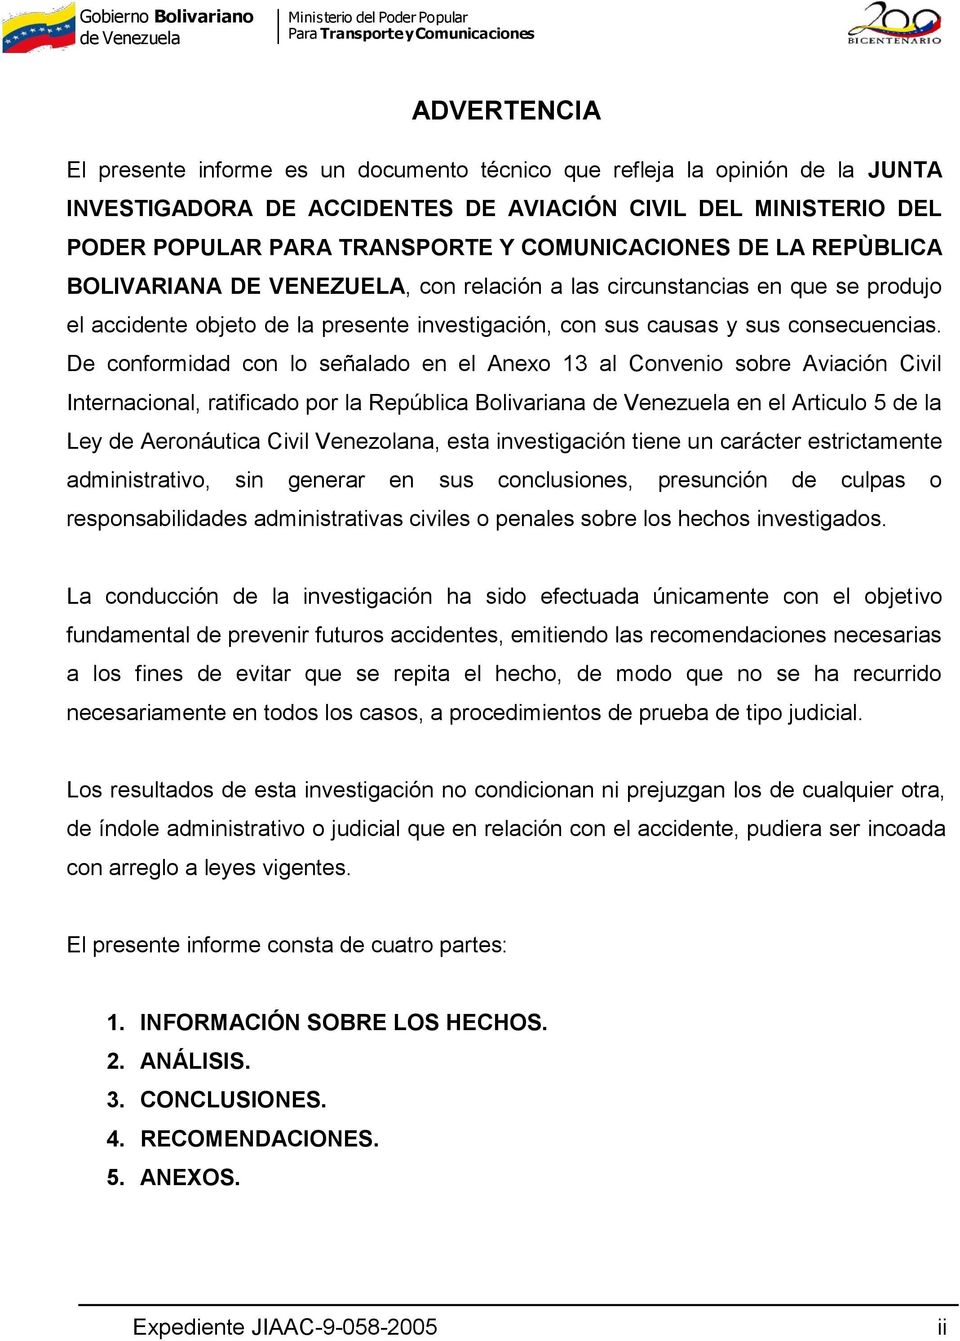 De conformidad con lo señalado en el Anexo 13 al Convenio sobre Aviación Civil Internacional, ratificado por la República Bolivariana en el Articulo 5 de la Ley de Aeronáutica Civil Venezolana, esta